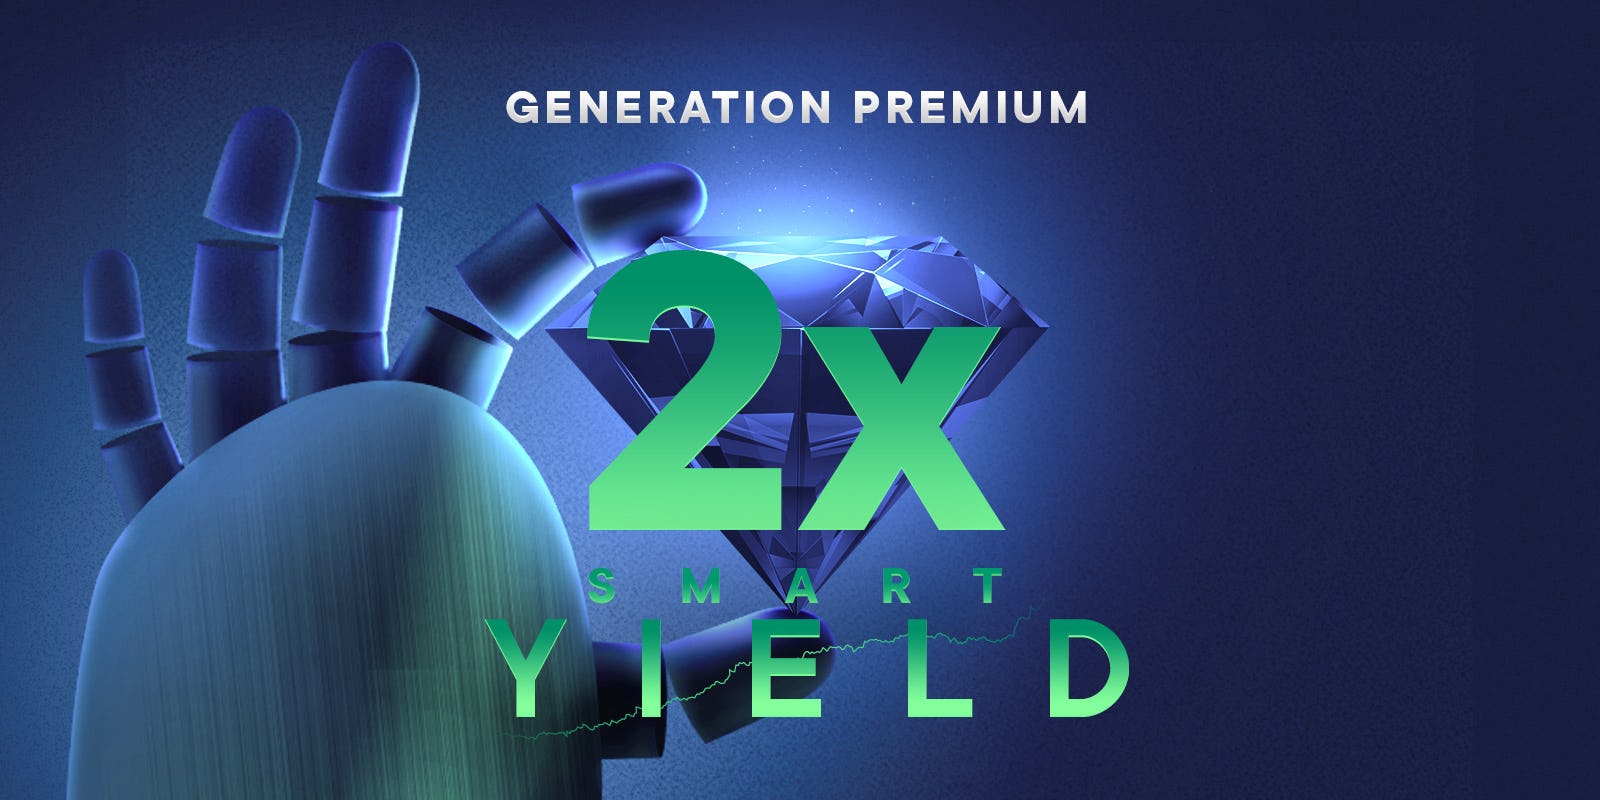 Bonne nouvelle pour les membres Generation Premium ! Votre boost de yield passe à x2 !